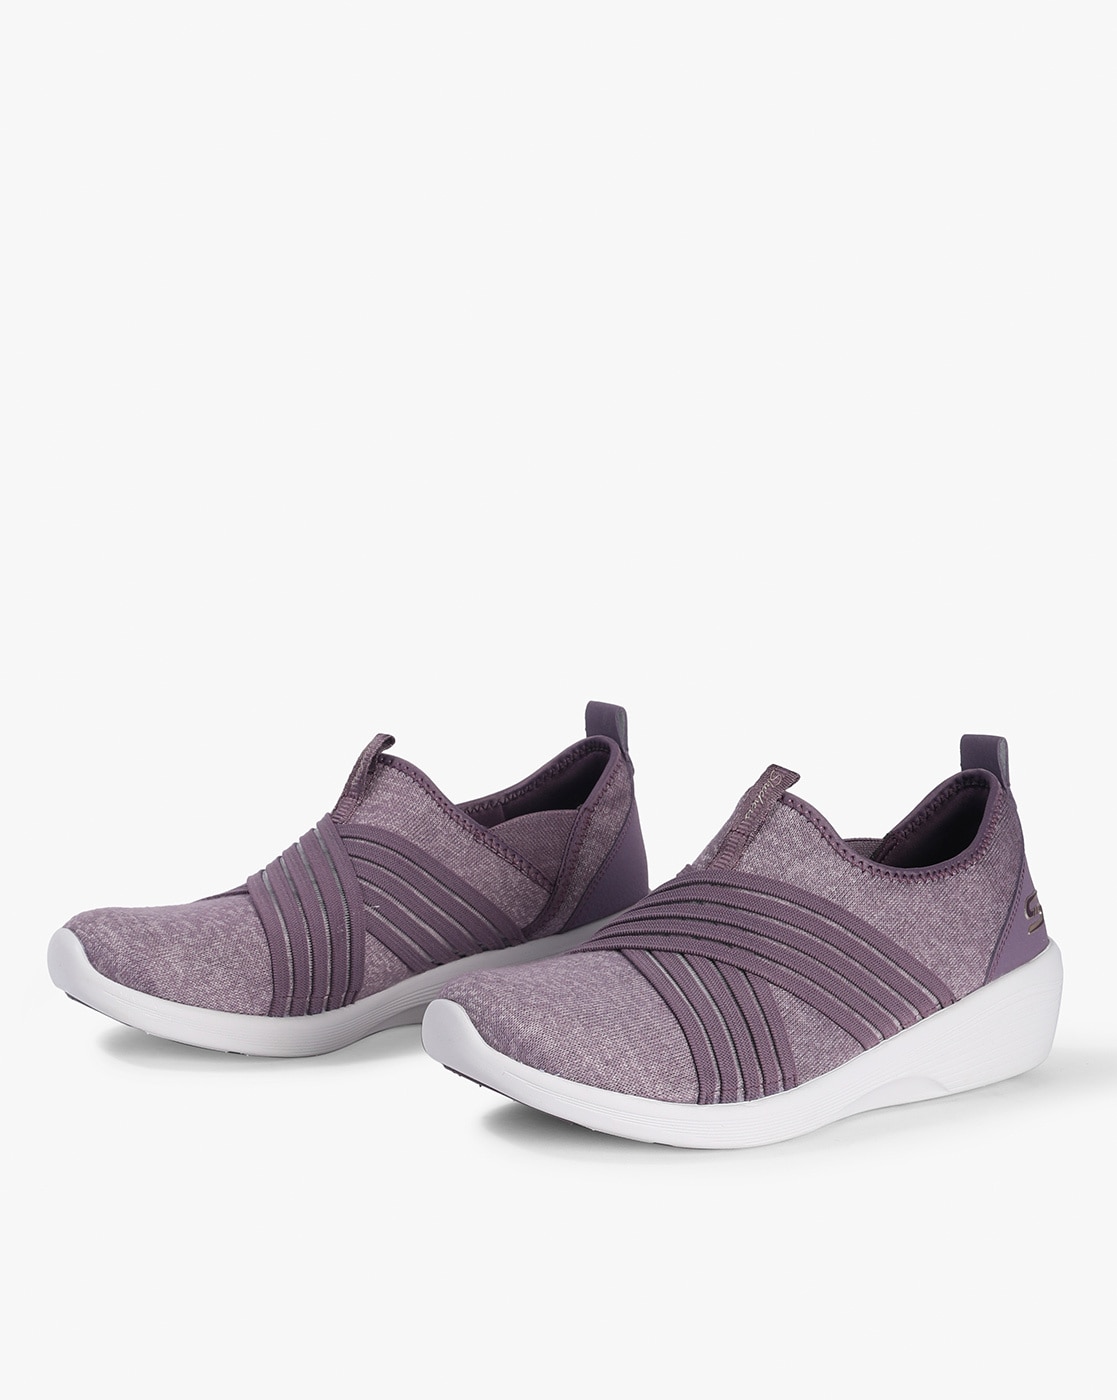 skechers womens shoes purple